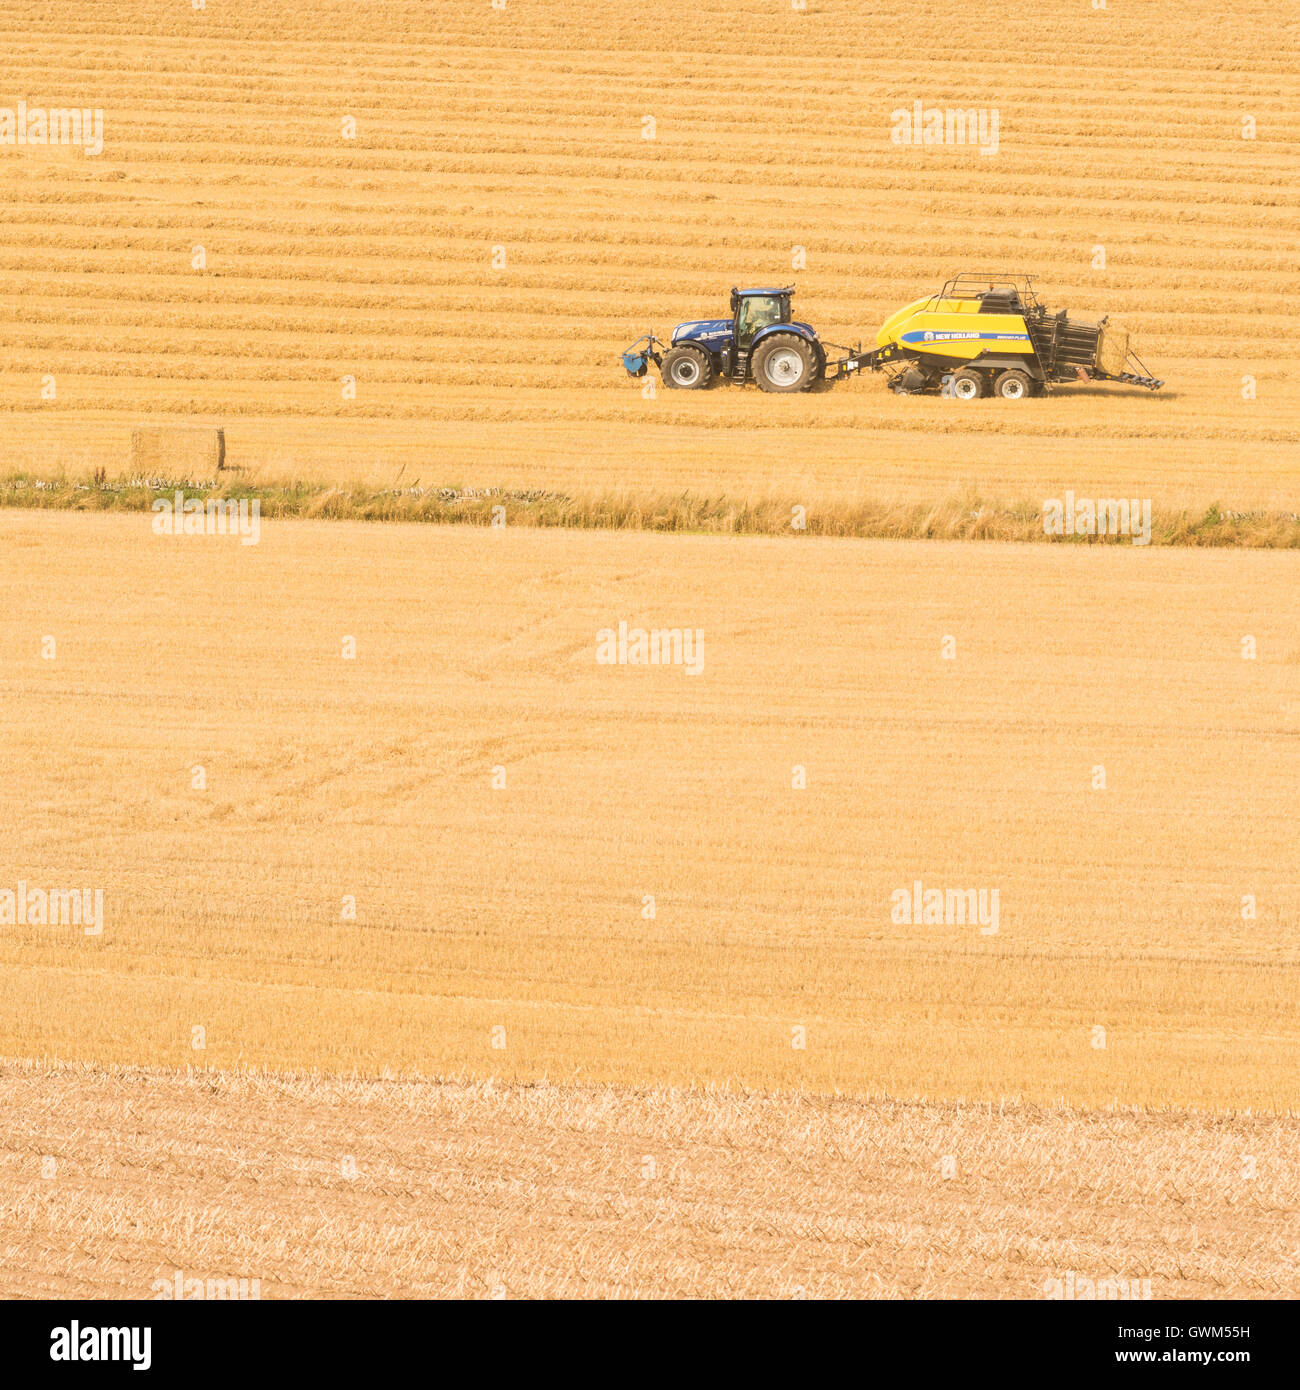 Moderne Landwirtschaft in Schottland - Traktor und Ballenpresse Herstellung rechteckige Ballen Stroh Stockfoto